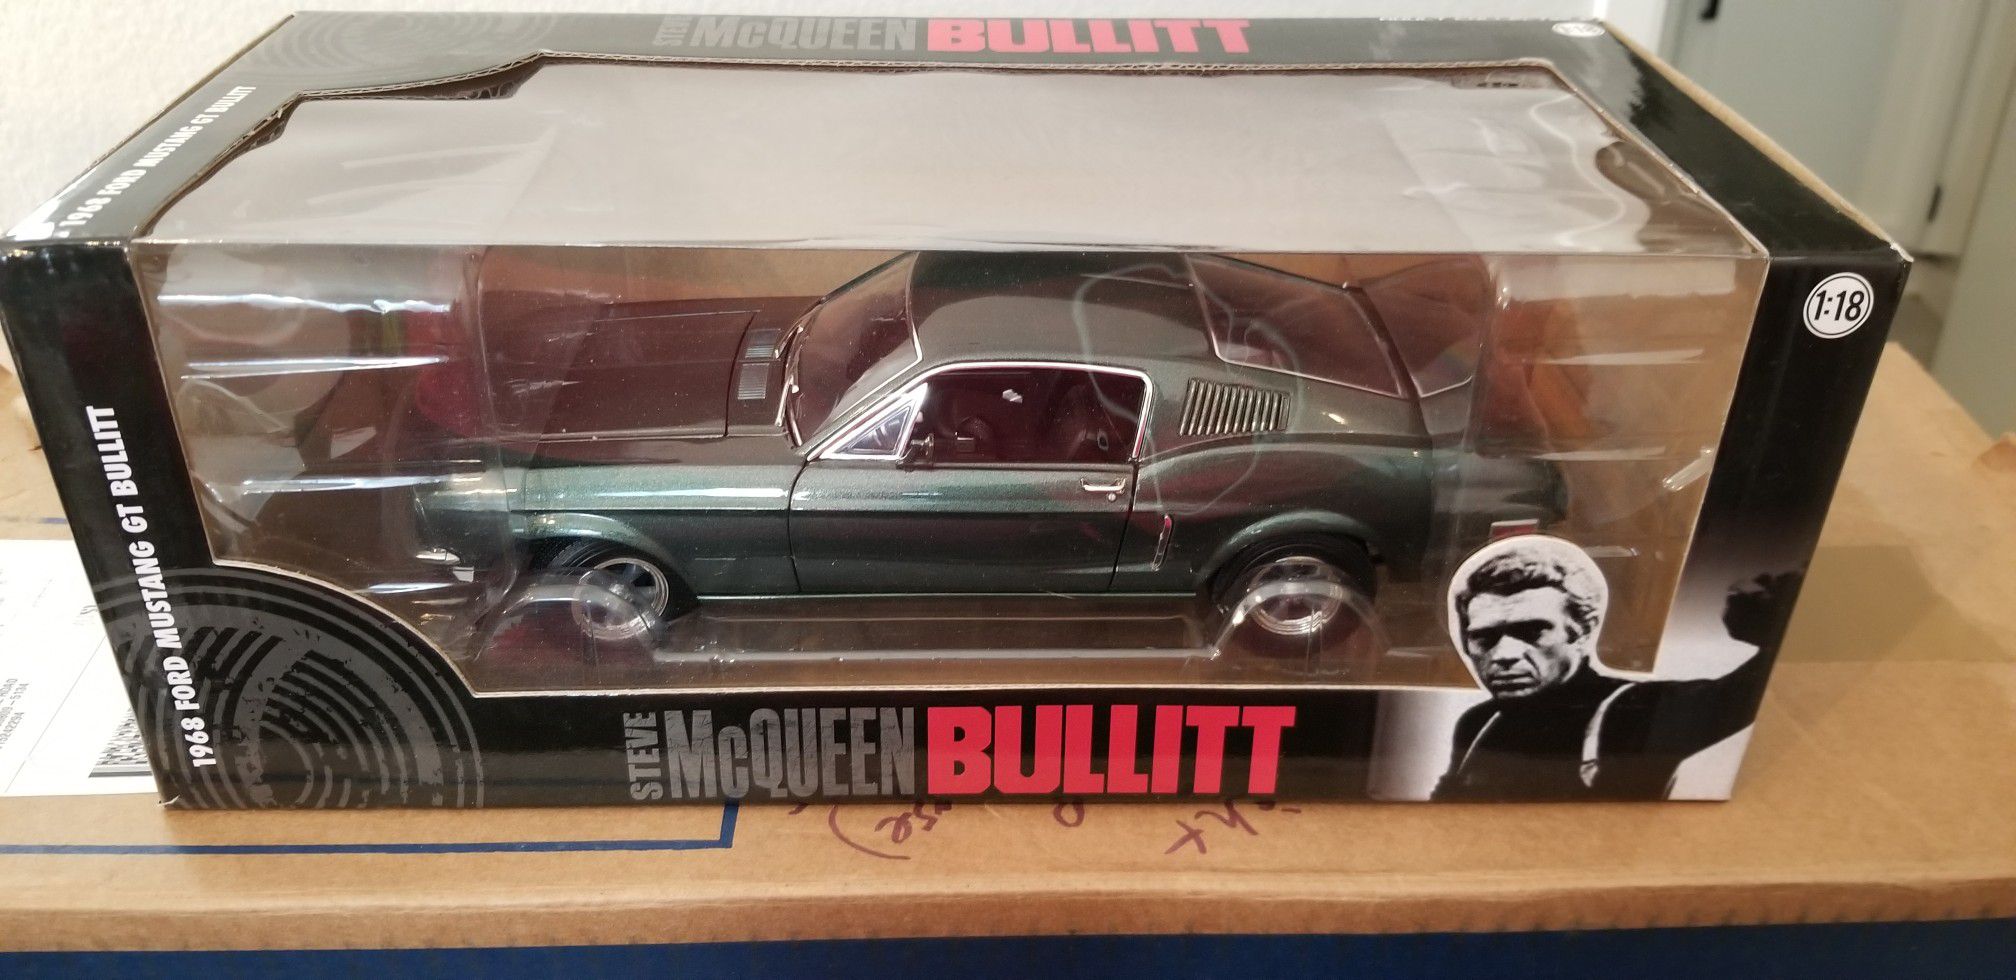 Steve McQueen Bullitt 1/18 Car Model. New in box. $30